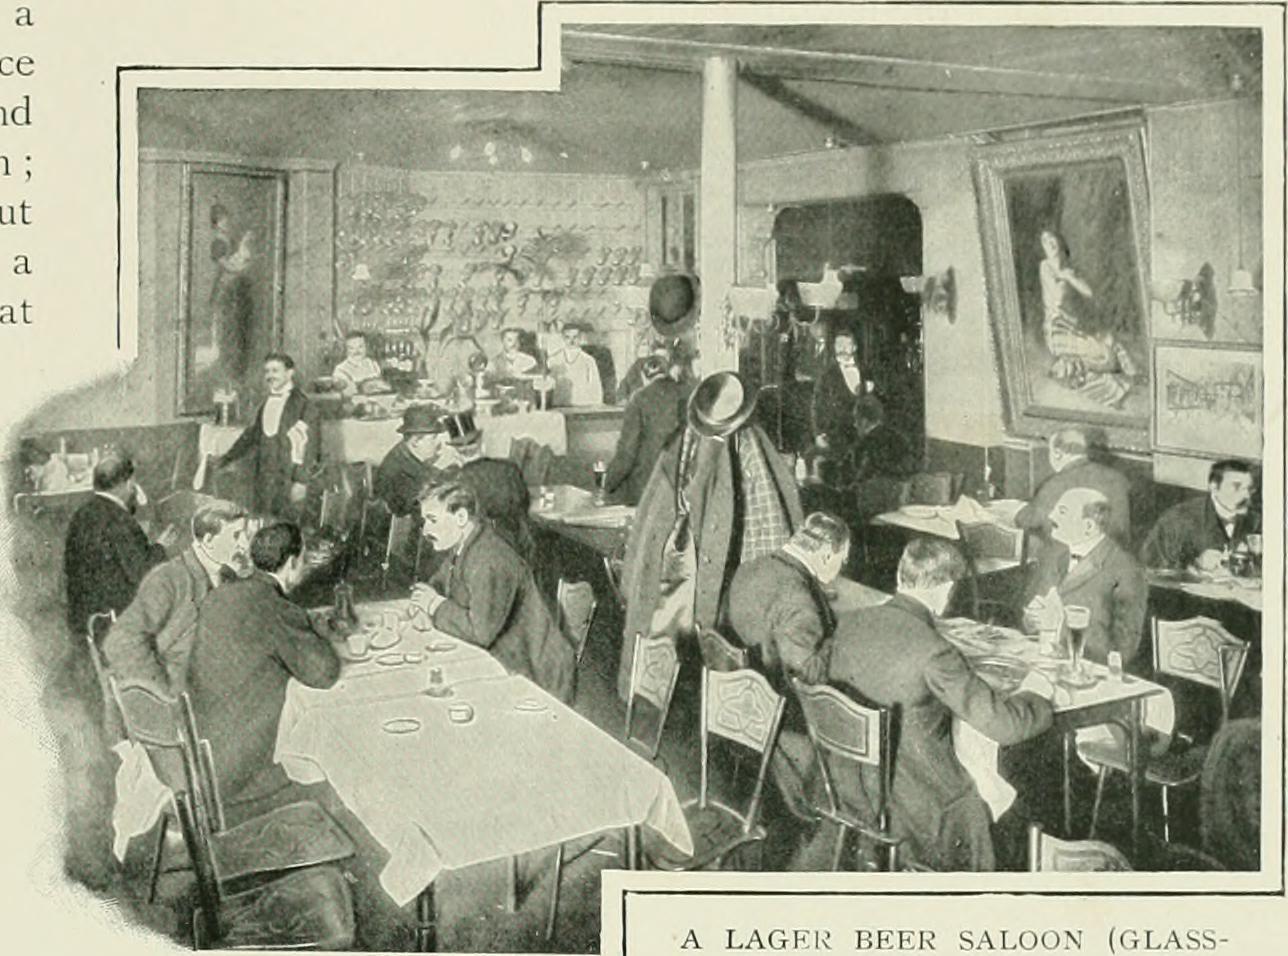 Lager-Beer-Saloon-on-Glasshouse-Street-c.1900.jpg